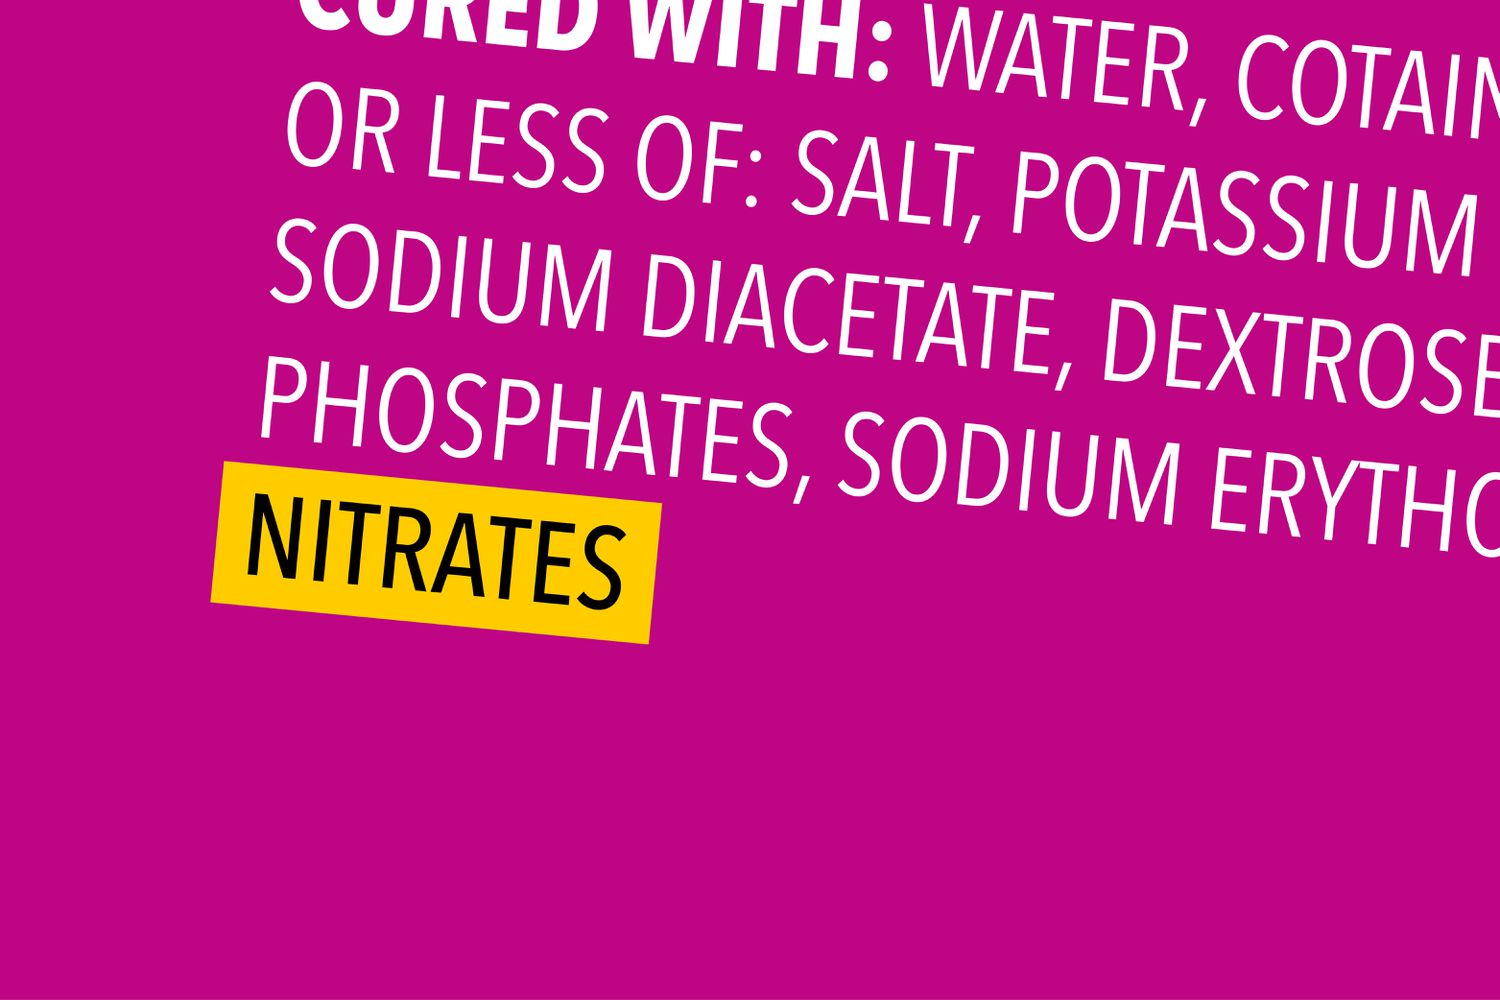 Etiqueta del alimento con nitratos resaltados en amarillo